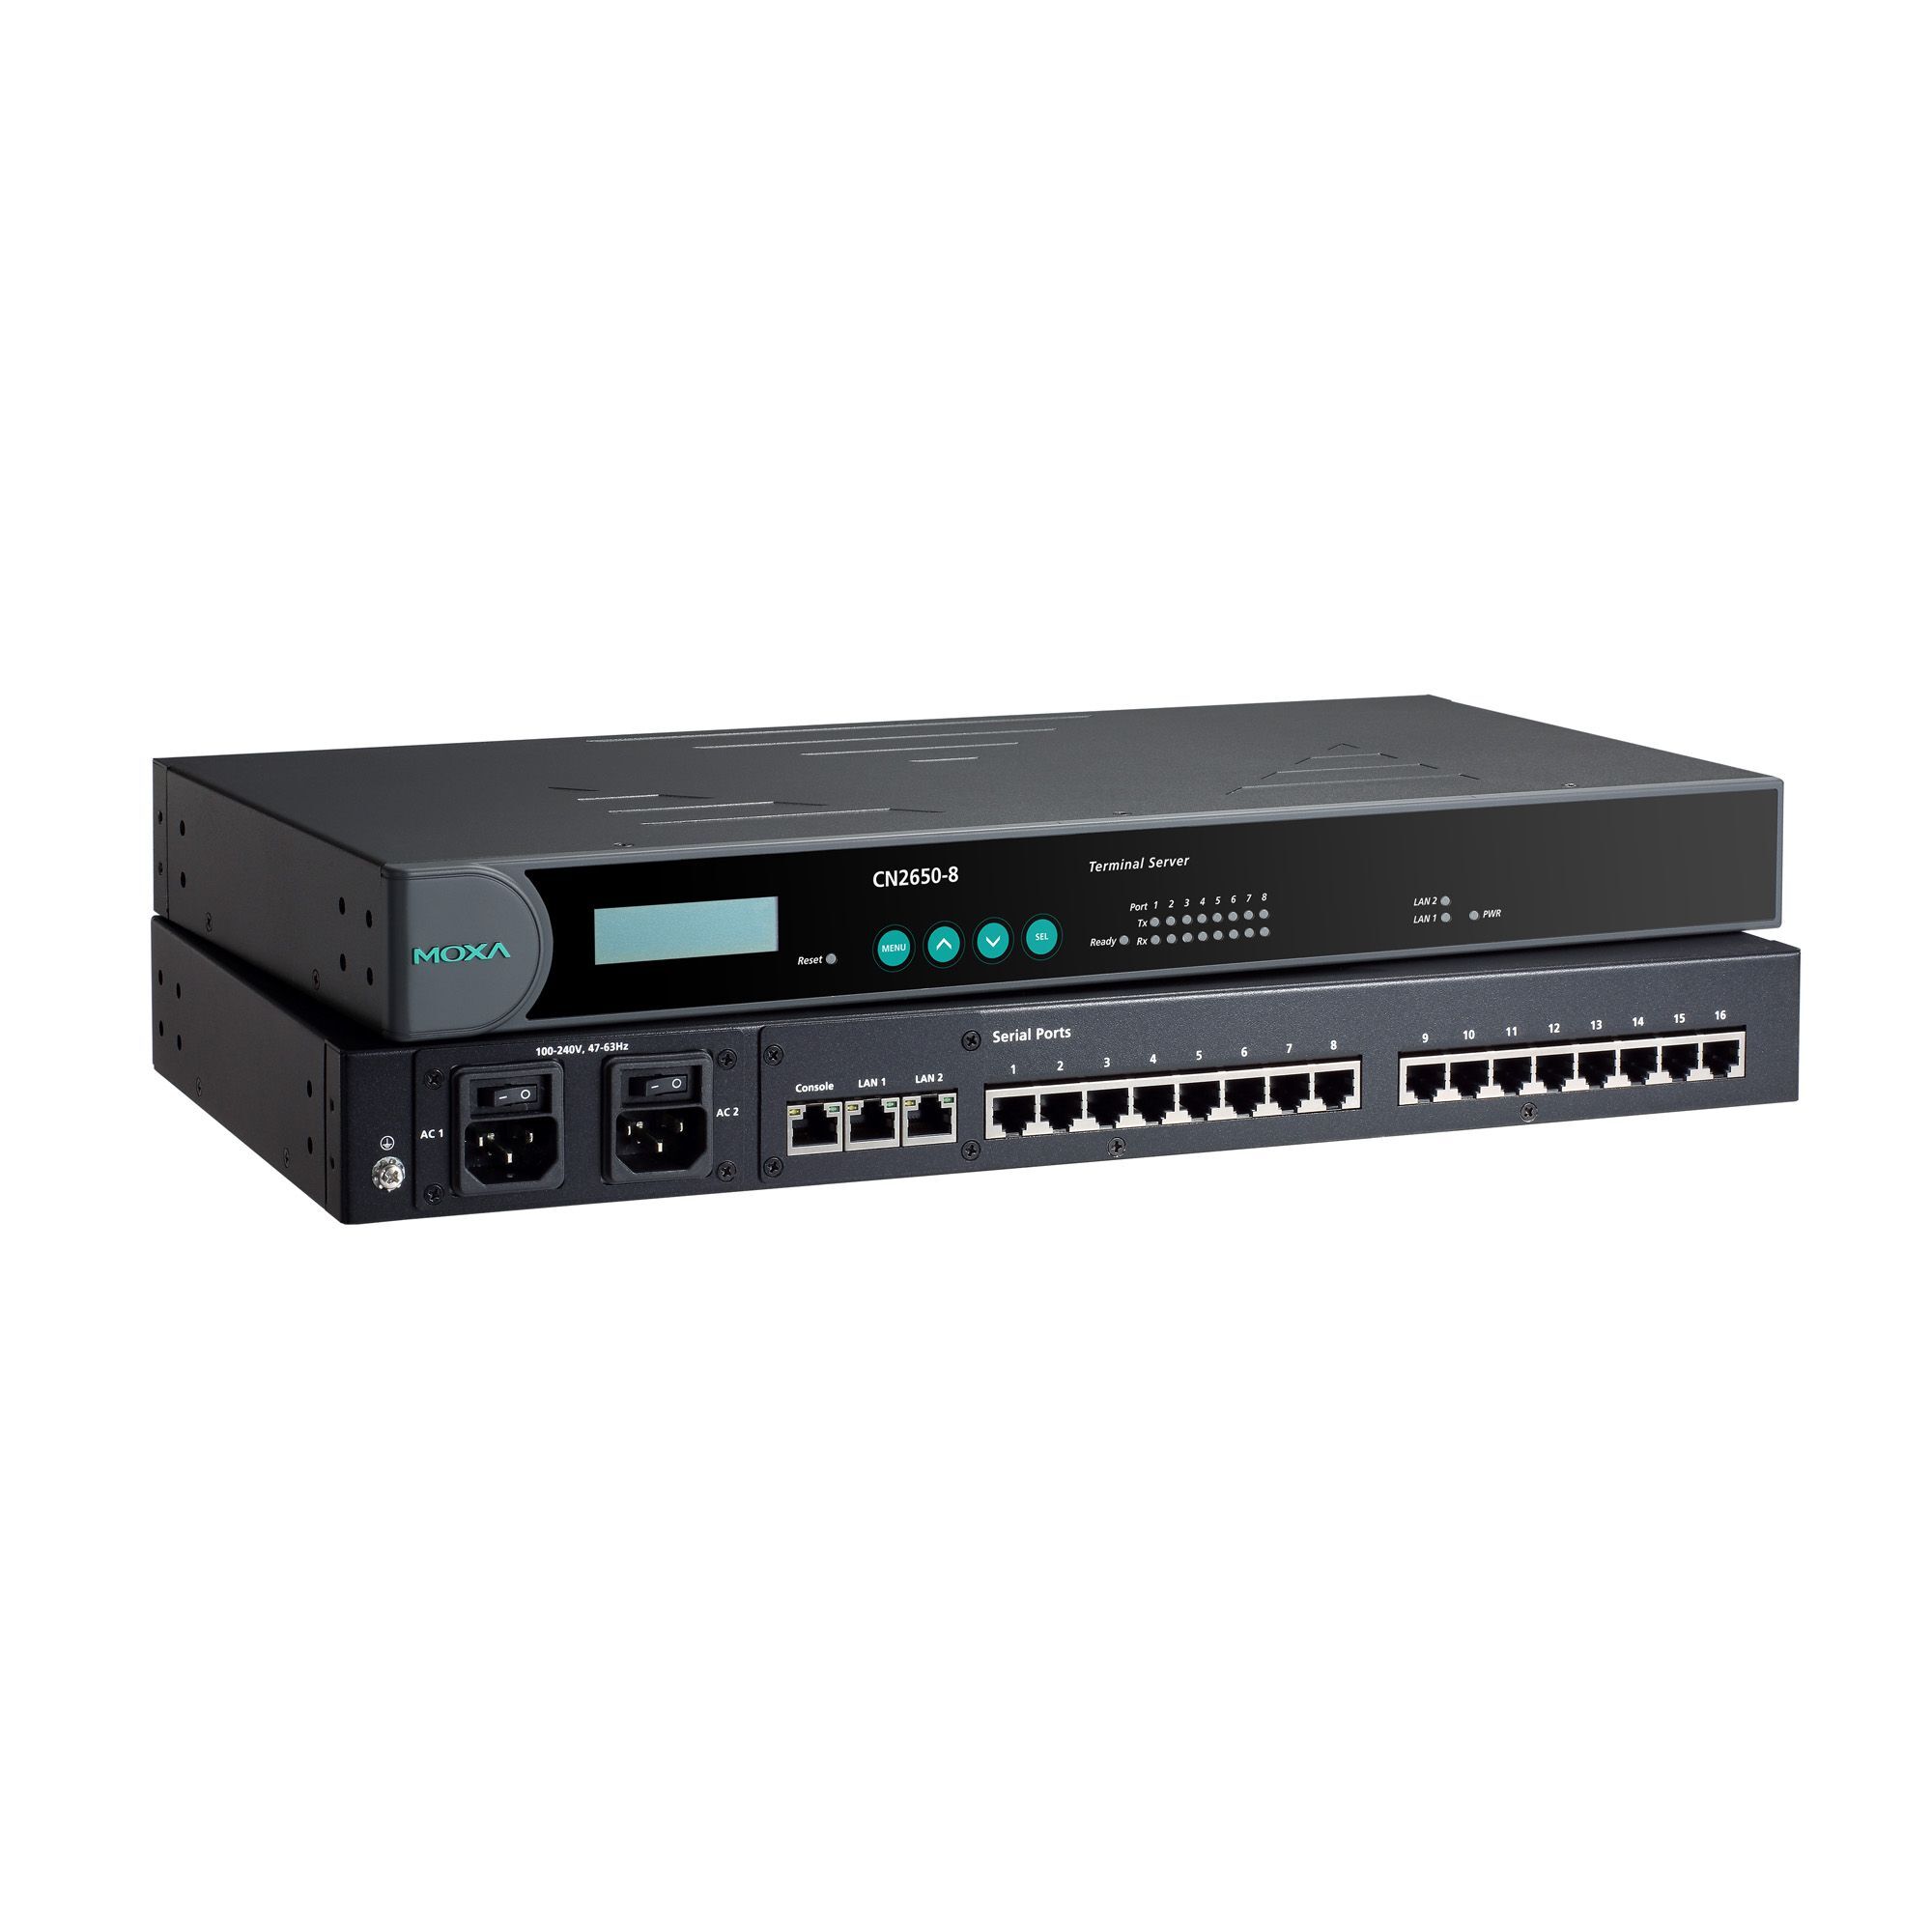 Серверное оборудование Moxa CN2650-16